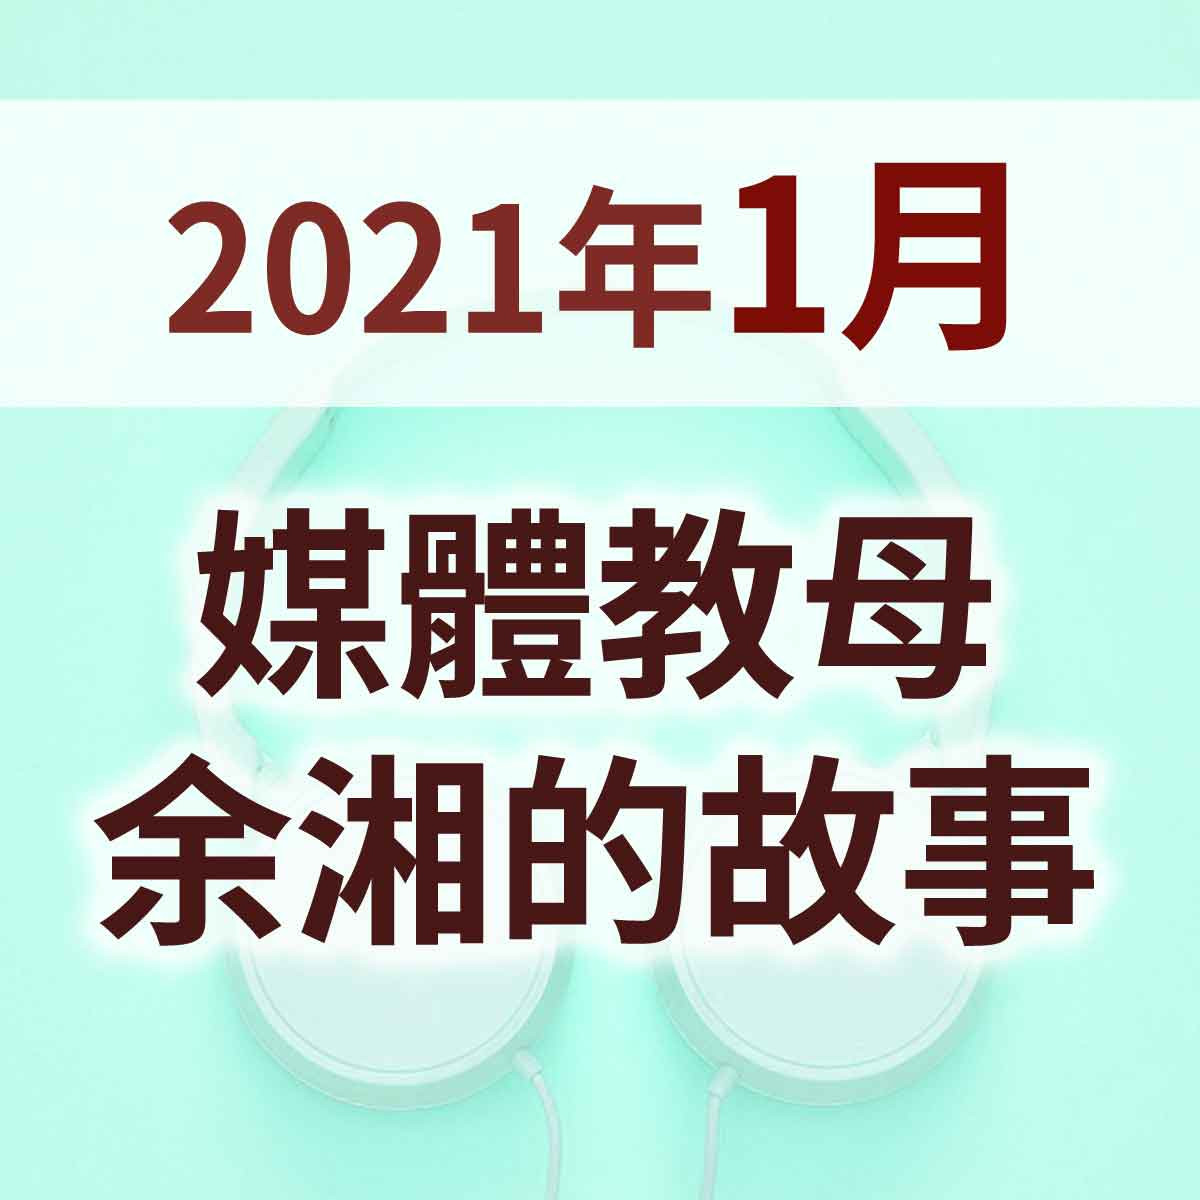 2021年1月 - 媒體教母余湘的故事封面圖